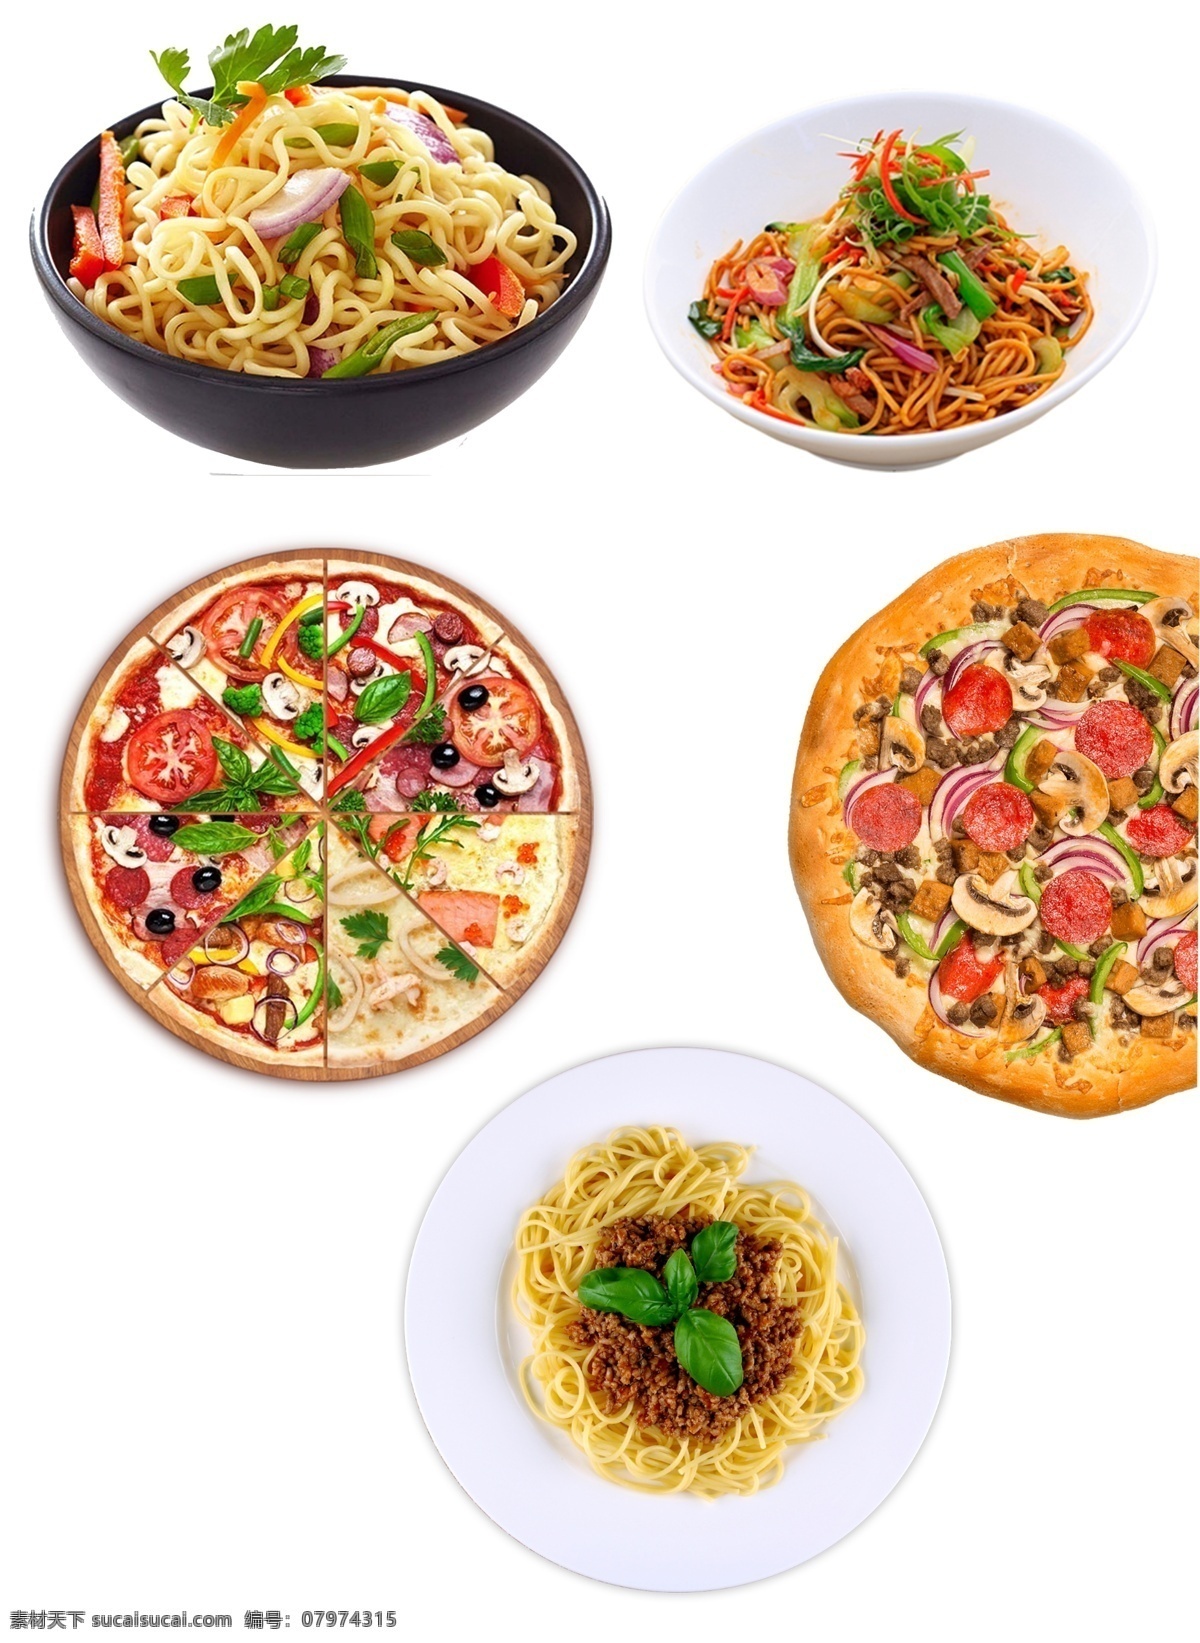 意大利 披萨 免 抠 意大利面 原味披萨 小蘑披萨 牛肉意面 多味披萨 分层